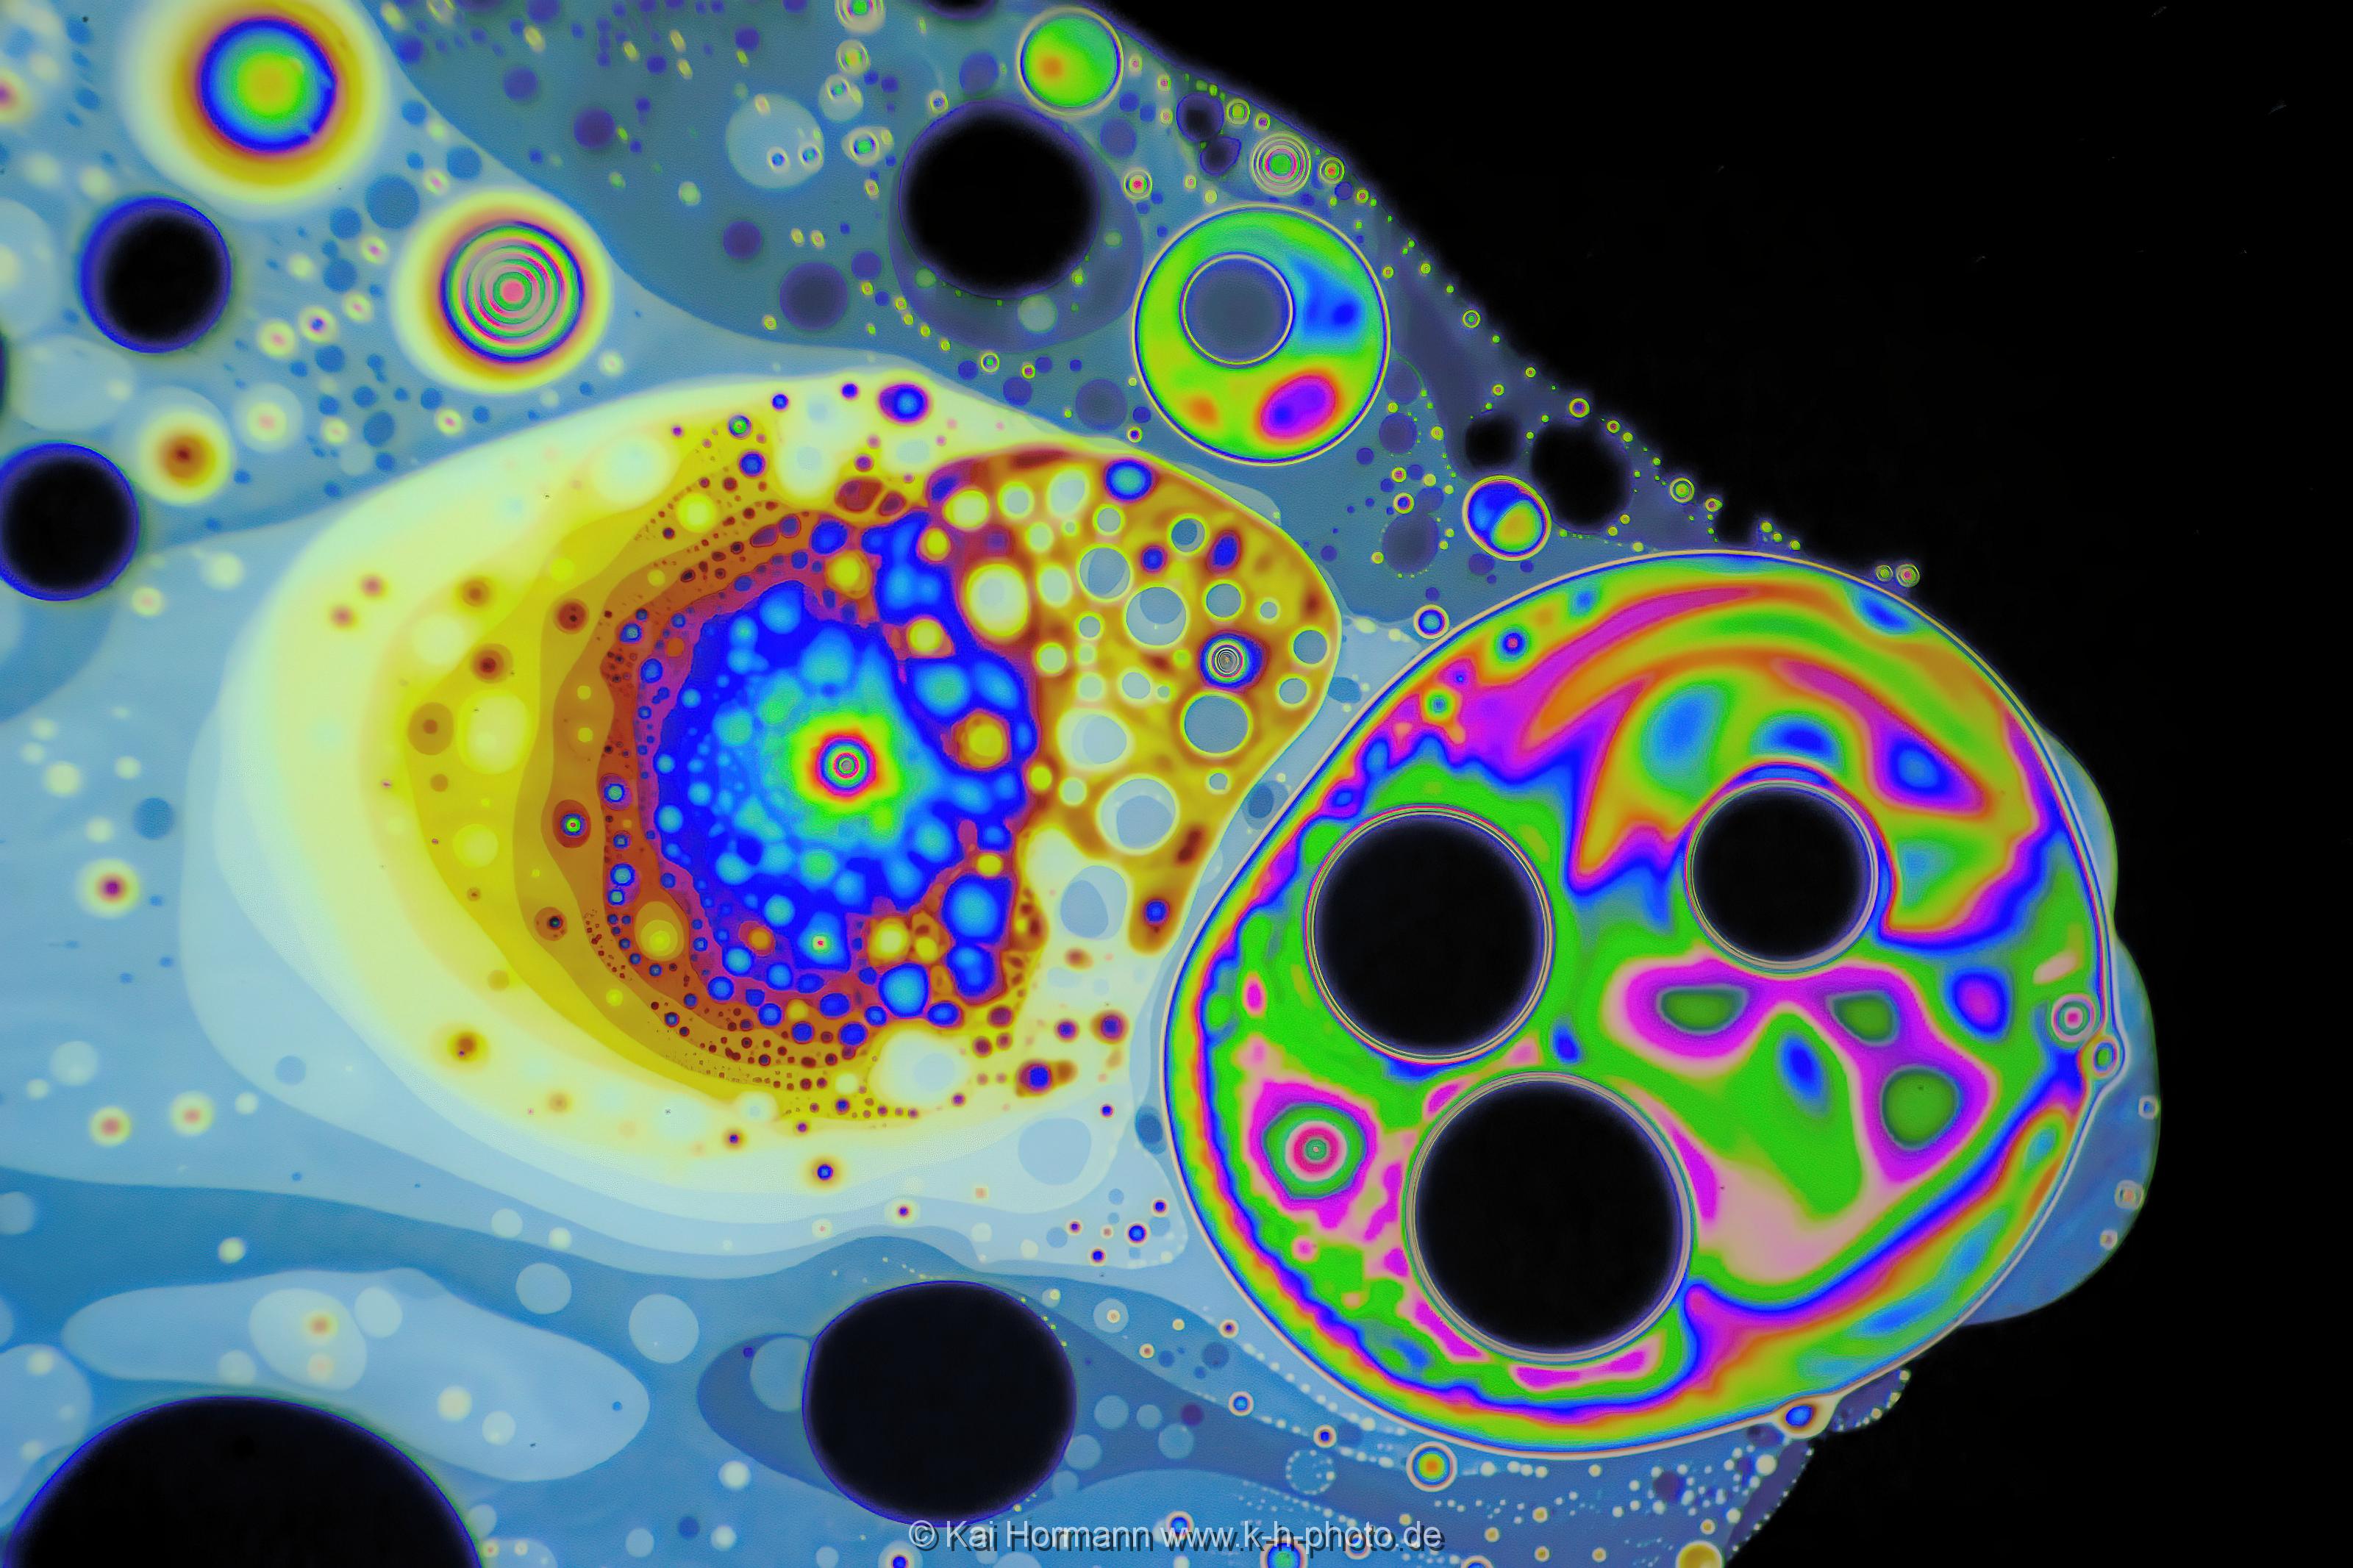 Strukturen und Farbmuster auf der Haut einer Seifenblase. Farb- und Interferenzmuster auf der Oberfläche einer Seifenblase. Vergrößerung ca. 50-100 X, Auflicht.